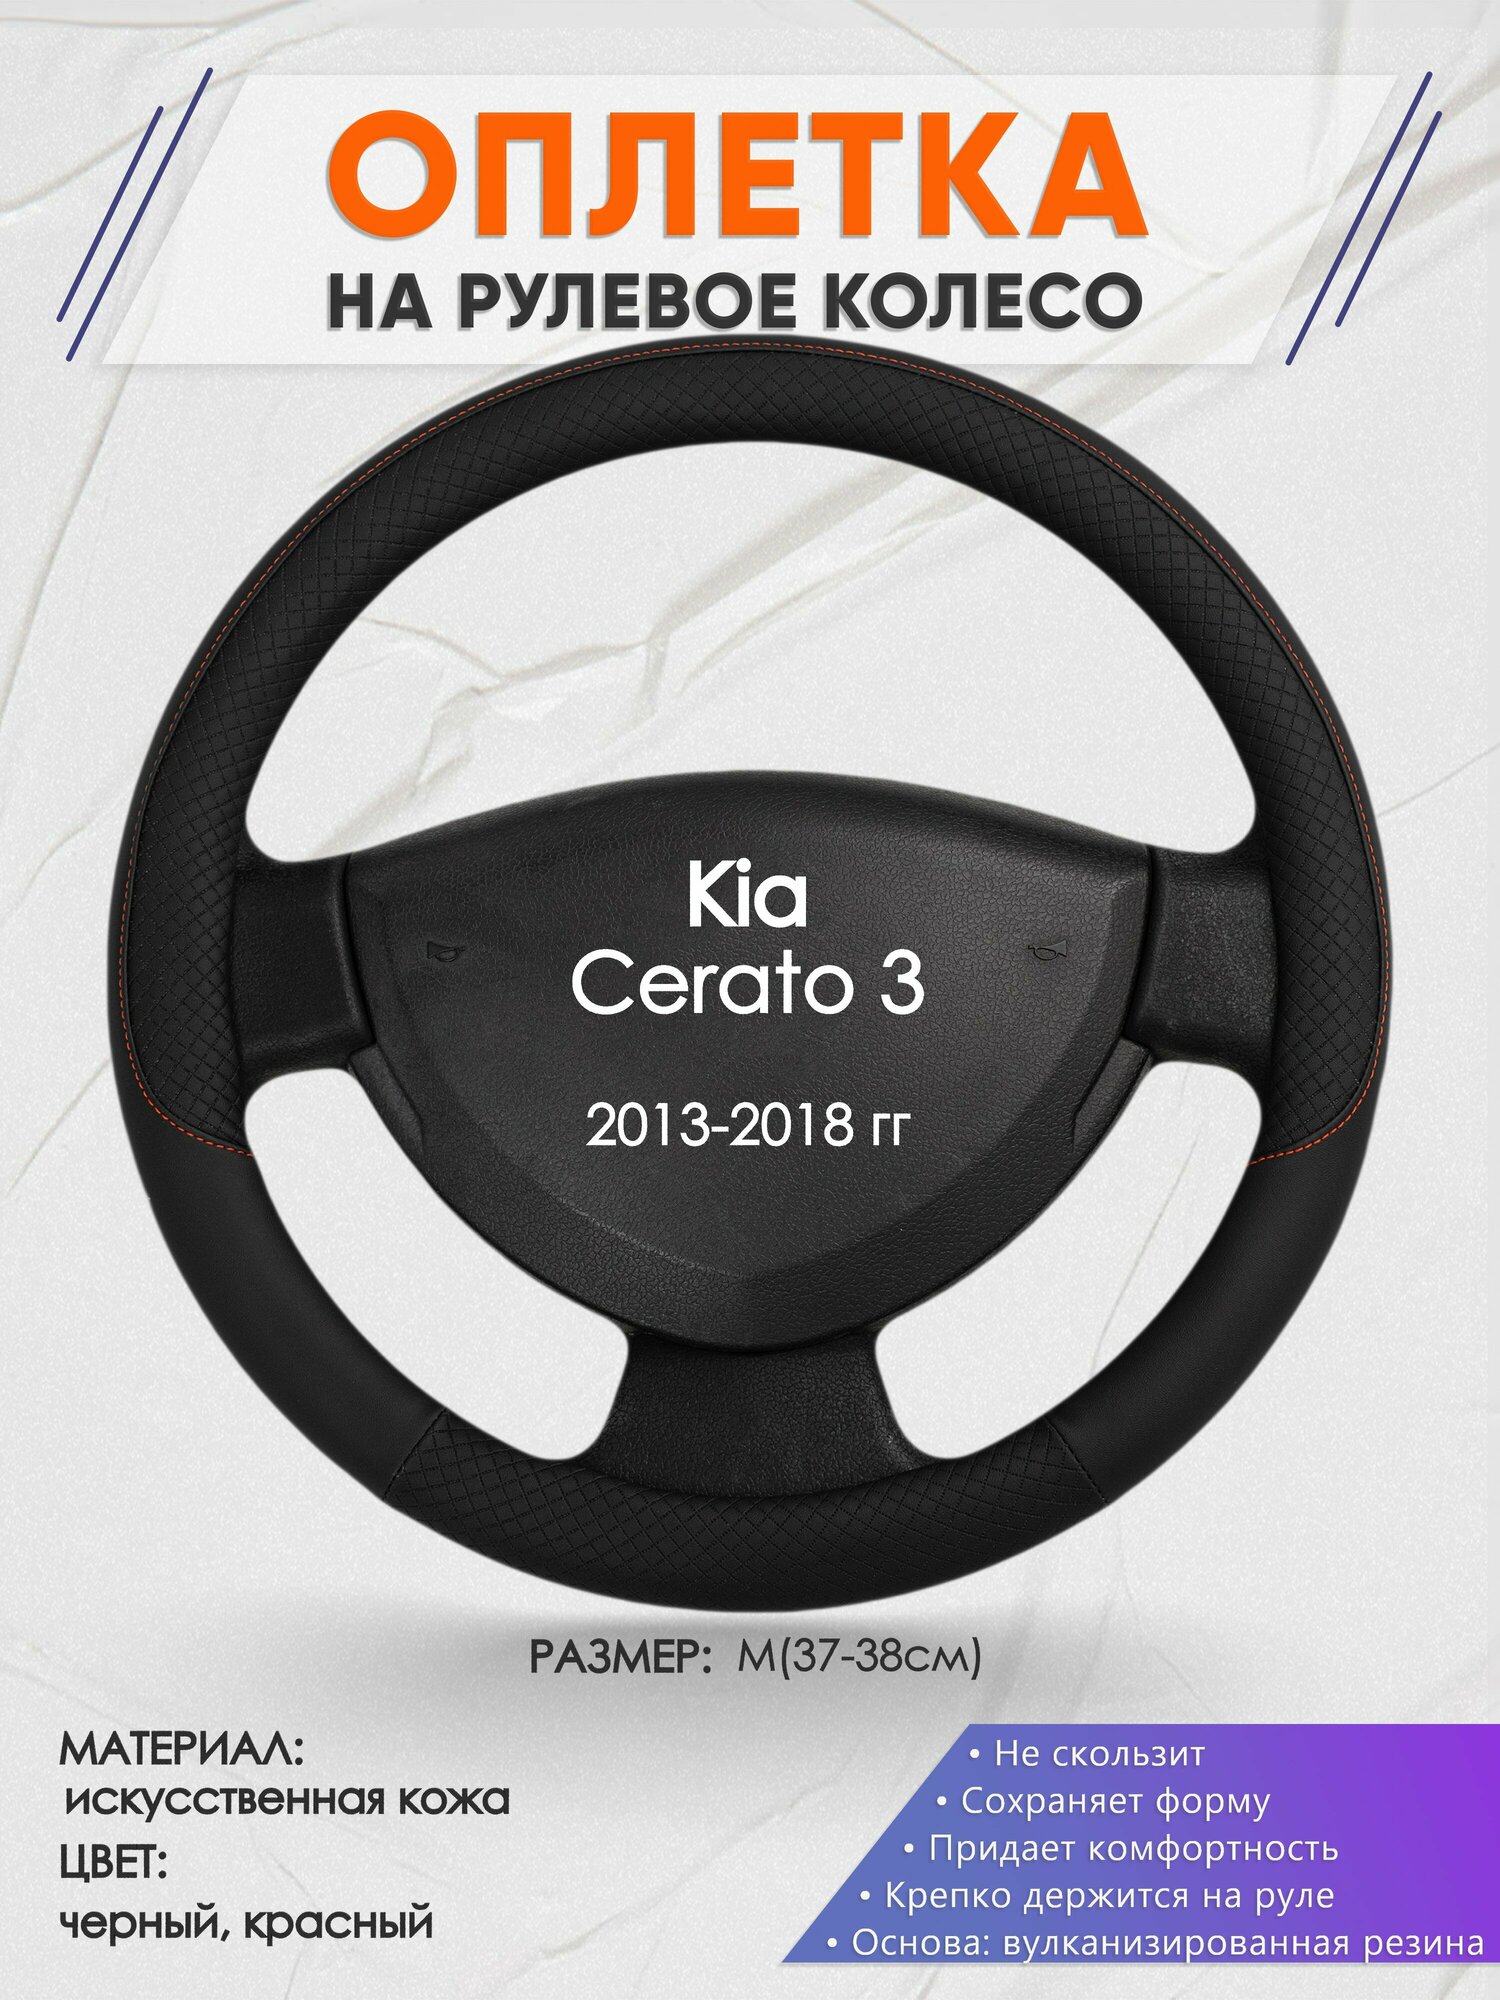 Оплетка на руль для Kia Cerato 3(Киа Церато 3) 2013-2018, M(37-38см), Искусственная кожа 18